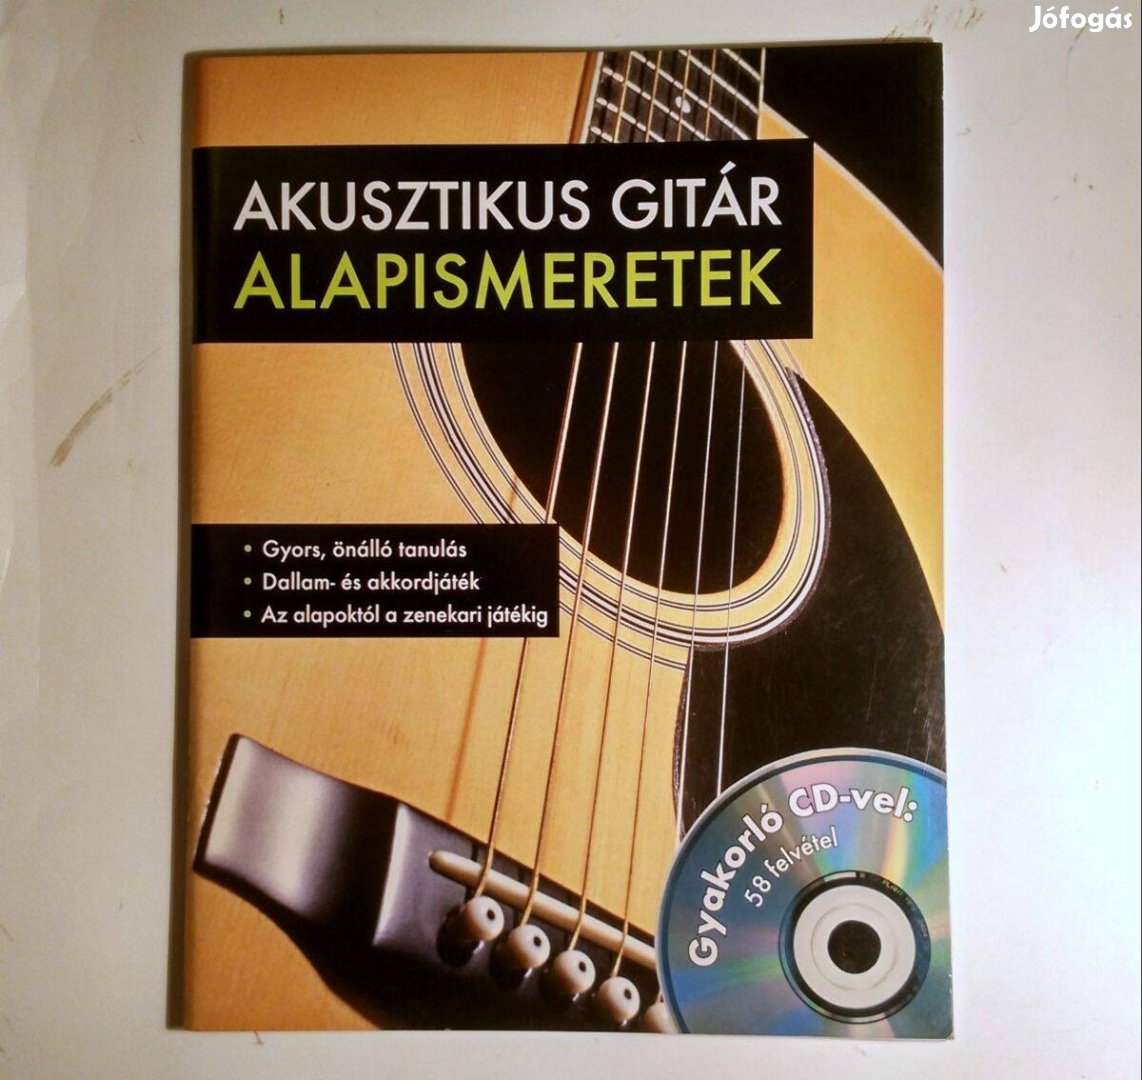 Akusztikus Gitár Alapismeretek (Frank Walter) 2012 (CD-vel) 7kép+tarta